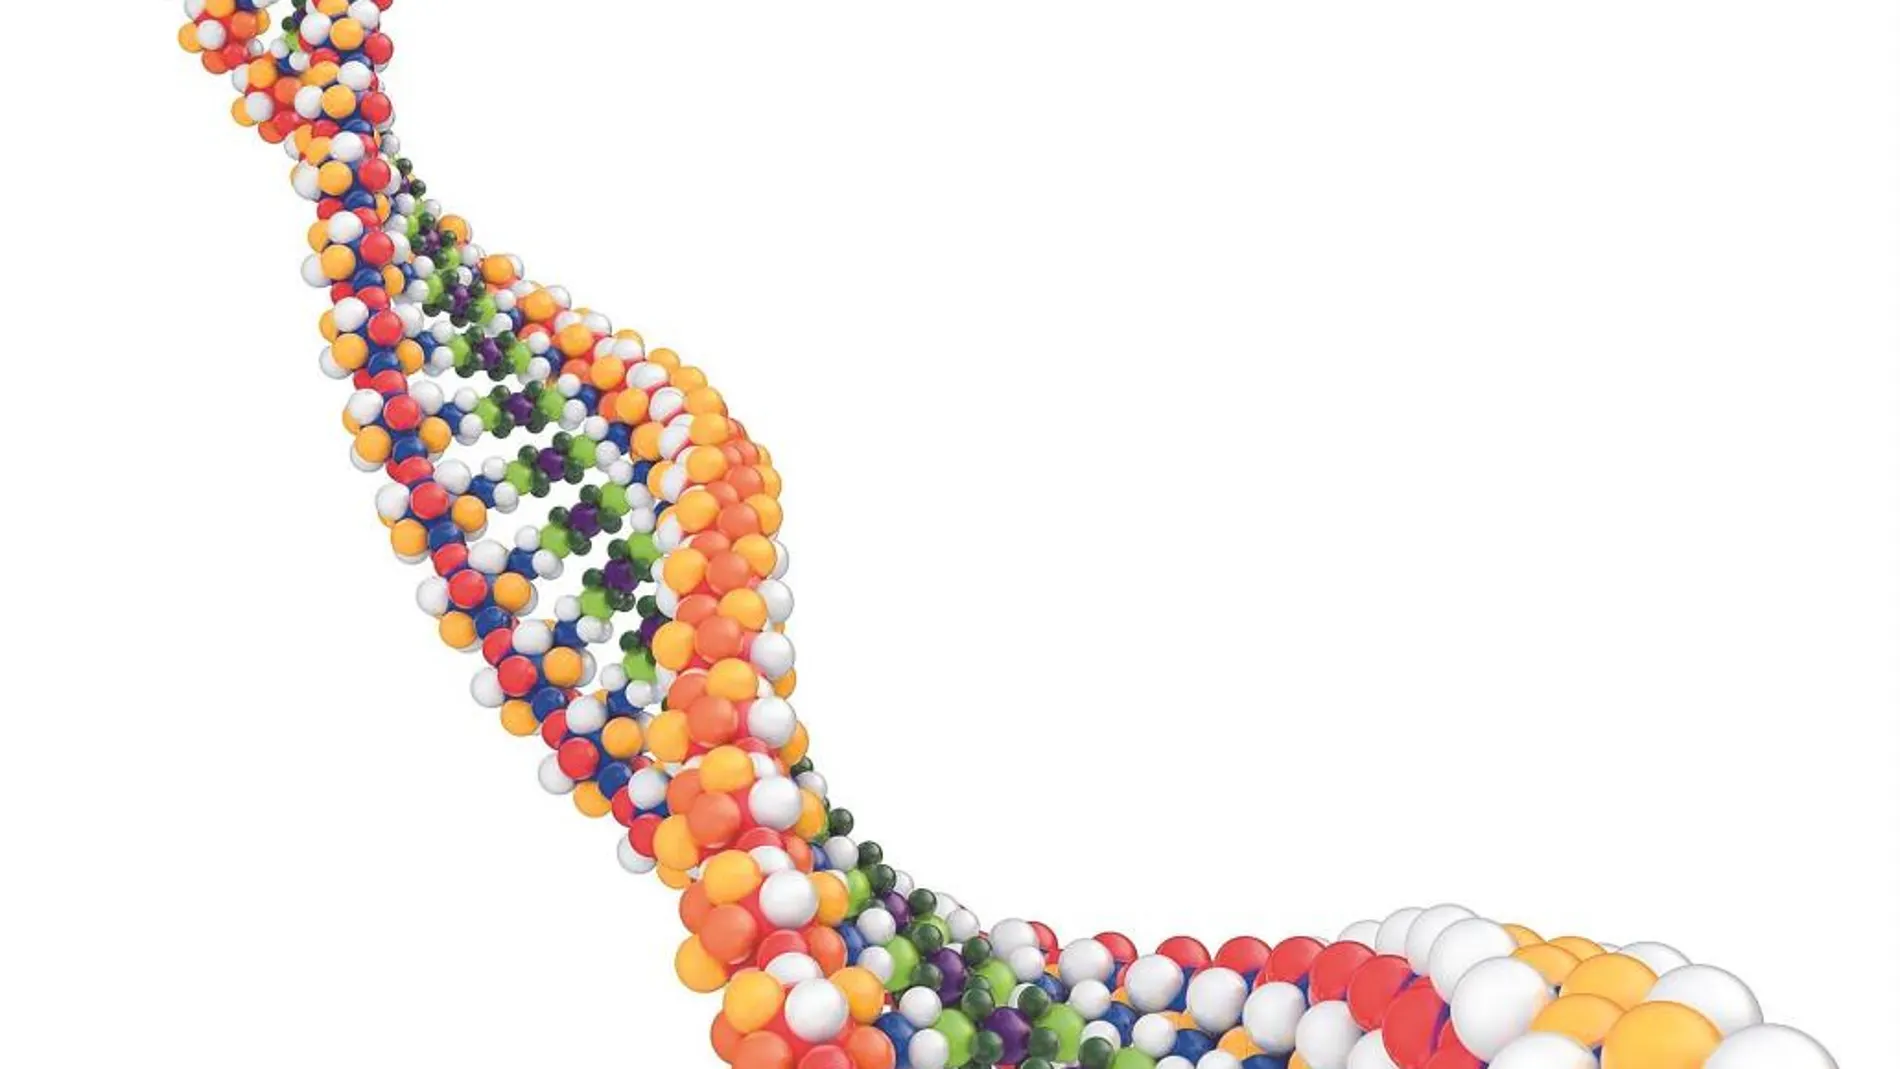 Oncología de precisión gracias al conocimiento del genoma